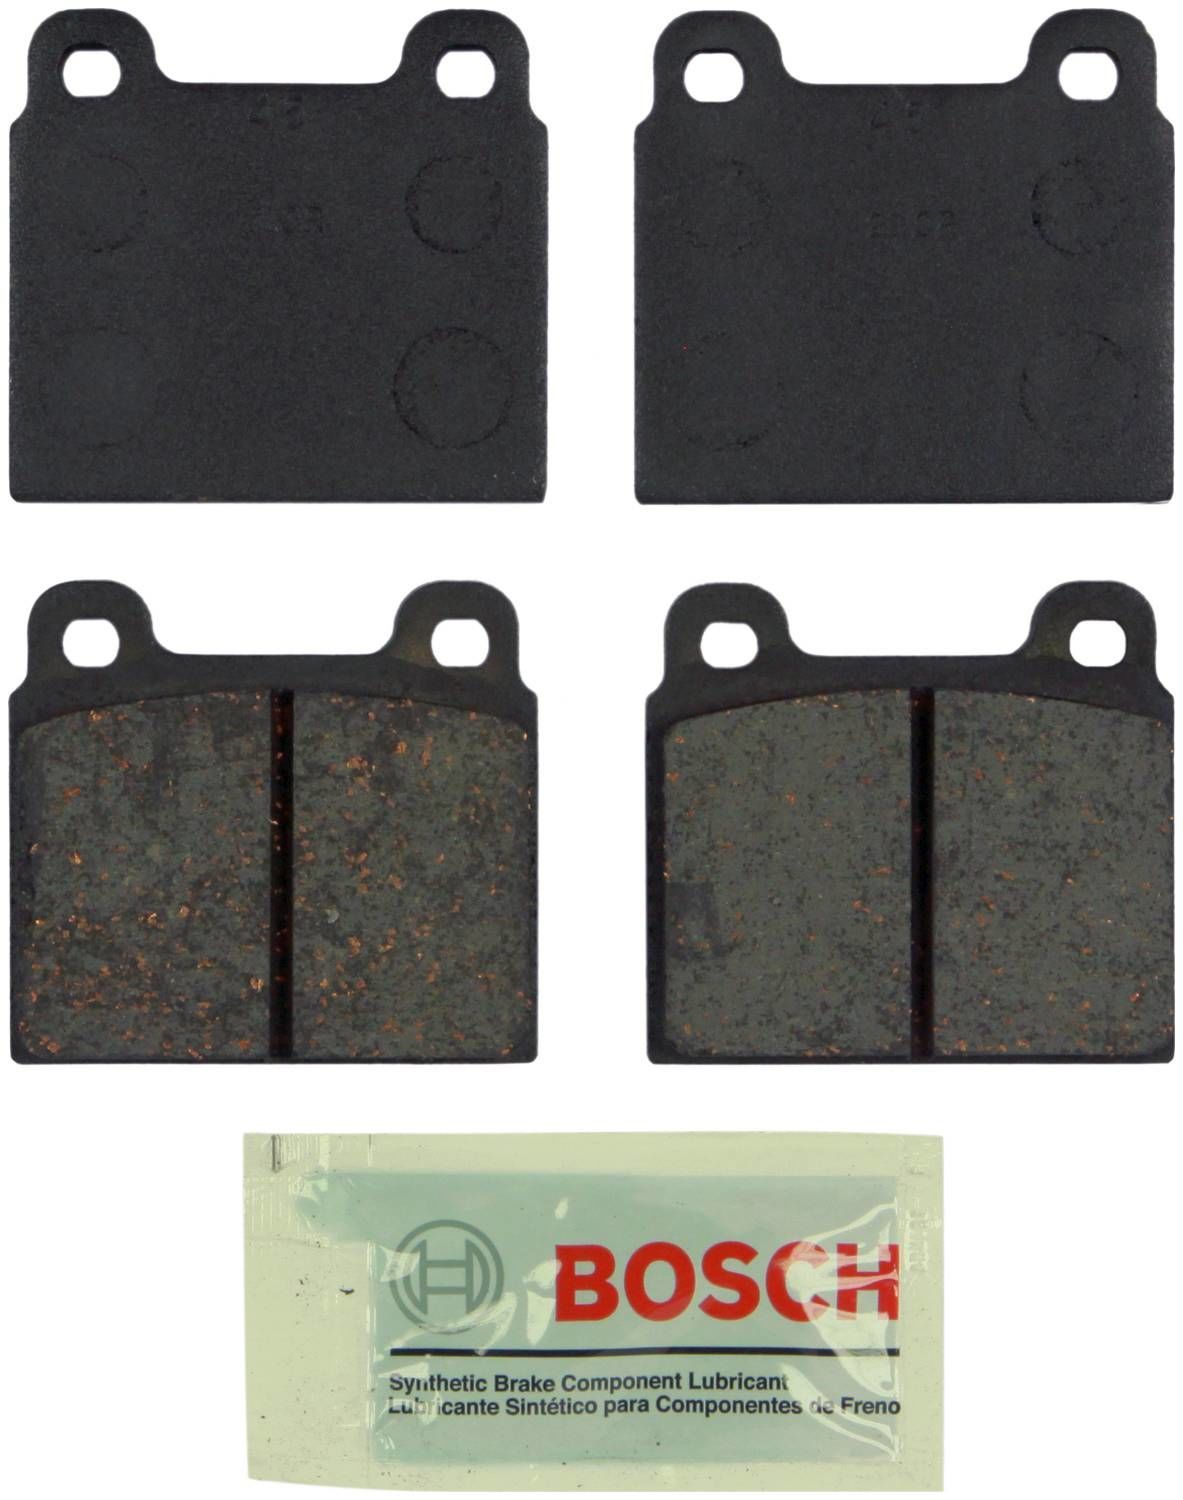 BOSCH BRAKE - Bosch Blue Ceramic Brake Pads (Front) - BQC BE45